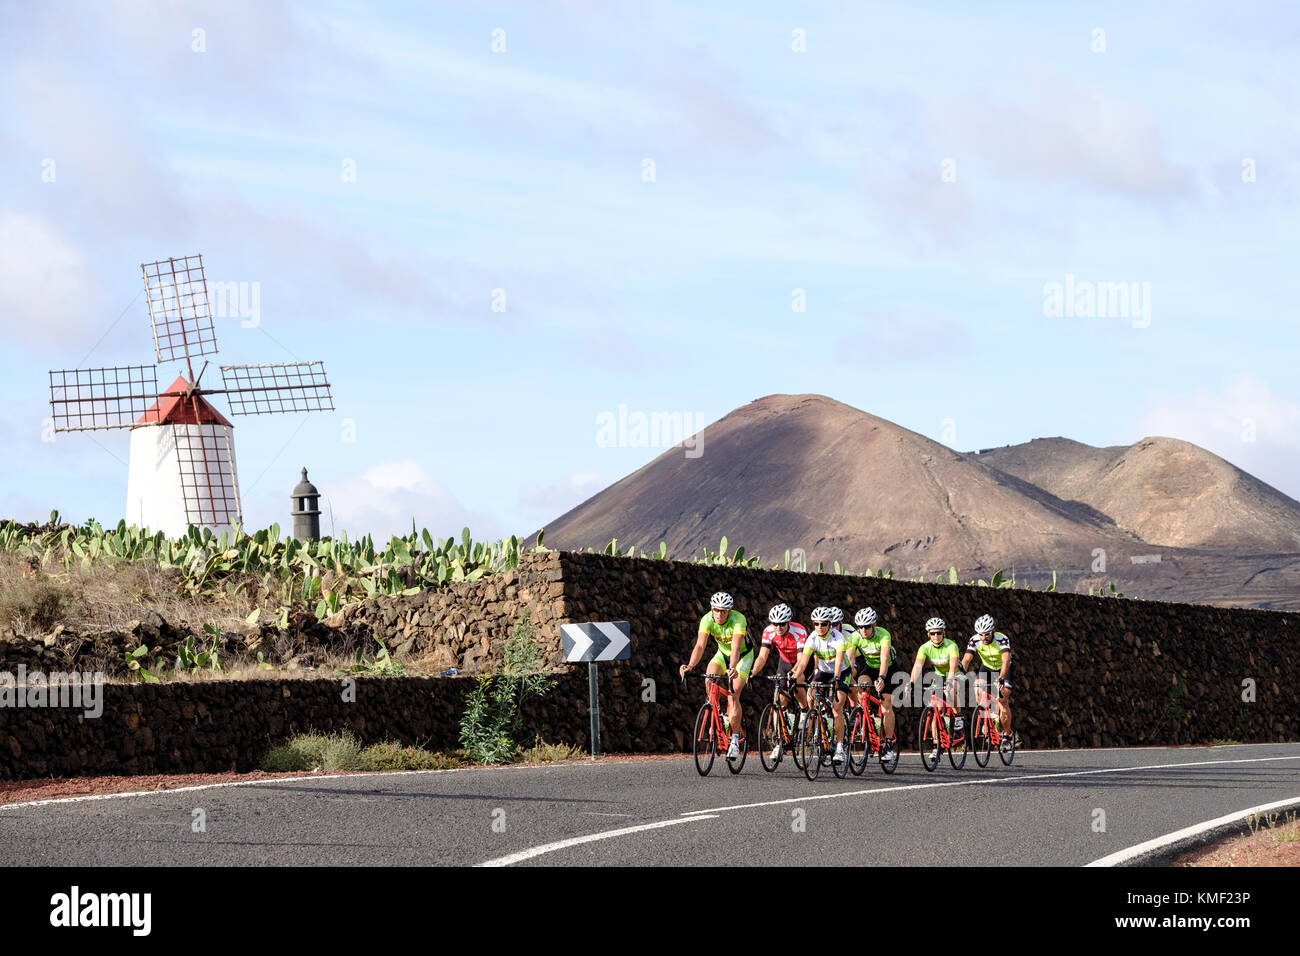 Un gruppo di ciclisti a pedalare su strada con i vulcani e il mulino a vento in background,Lanzarote,isole Canarie,Spagna Foto Stock